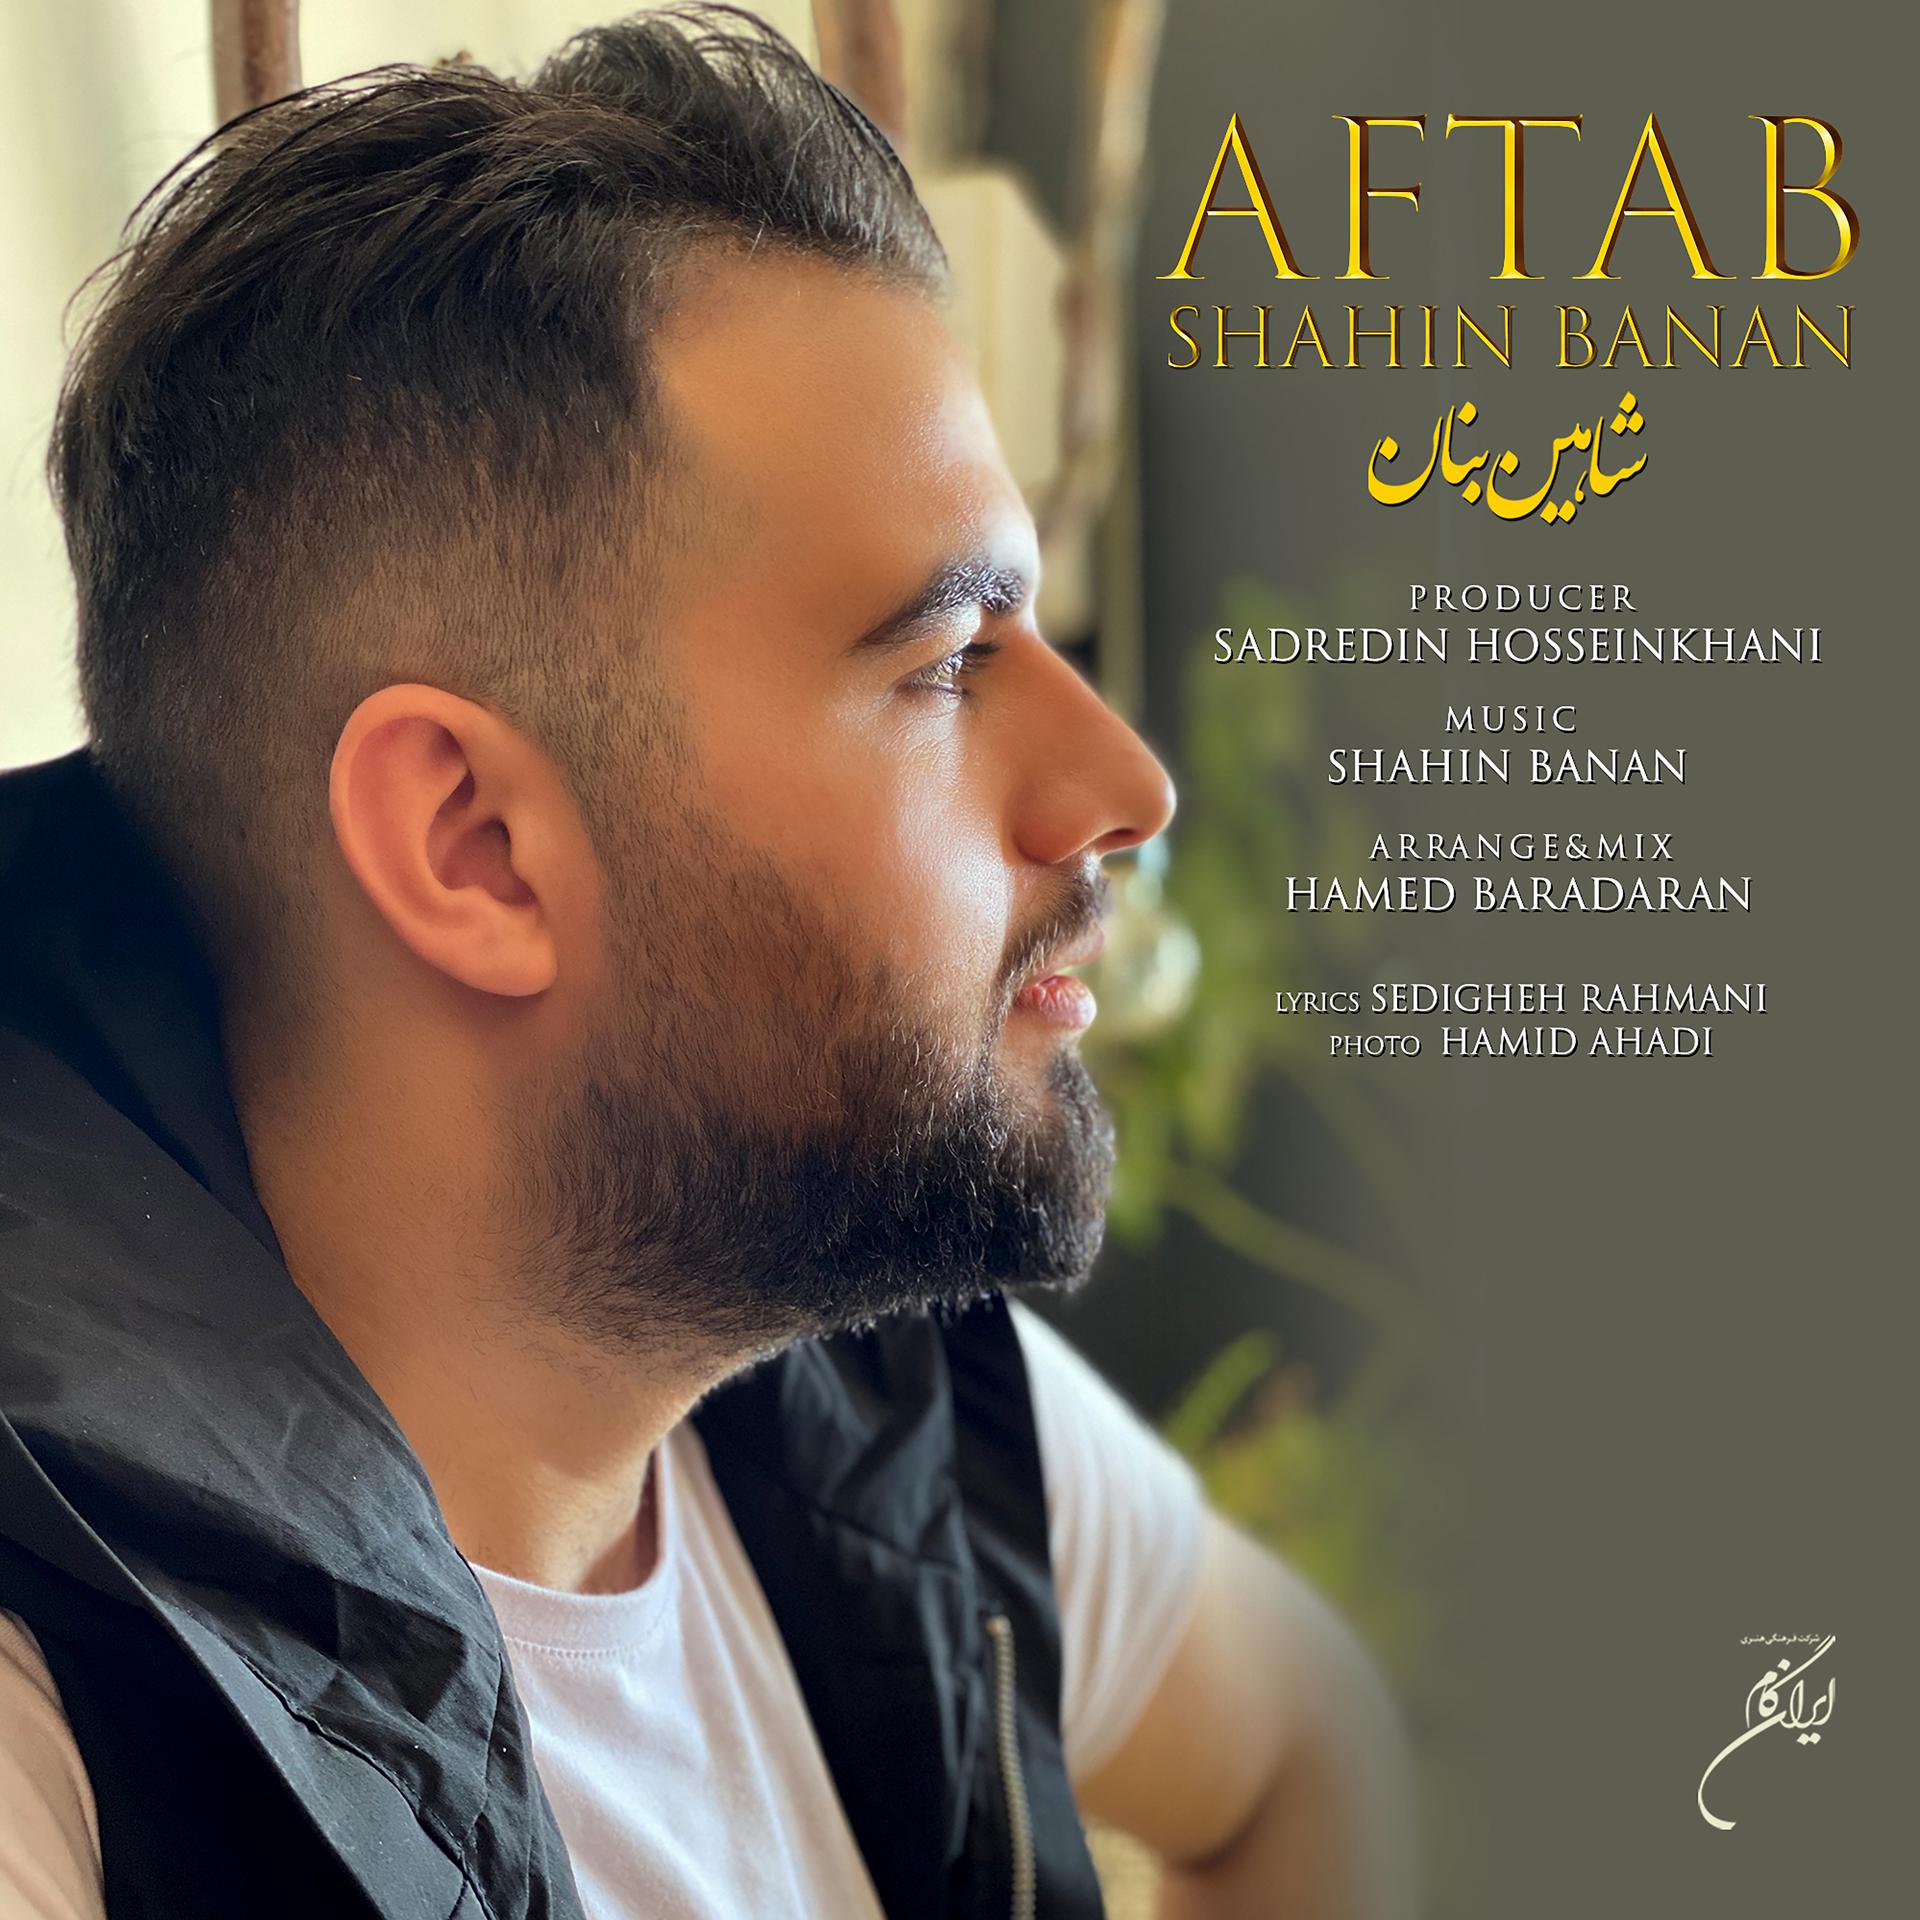 Постер к треку Shahin Banan - Aftab - Single